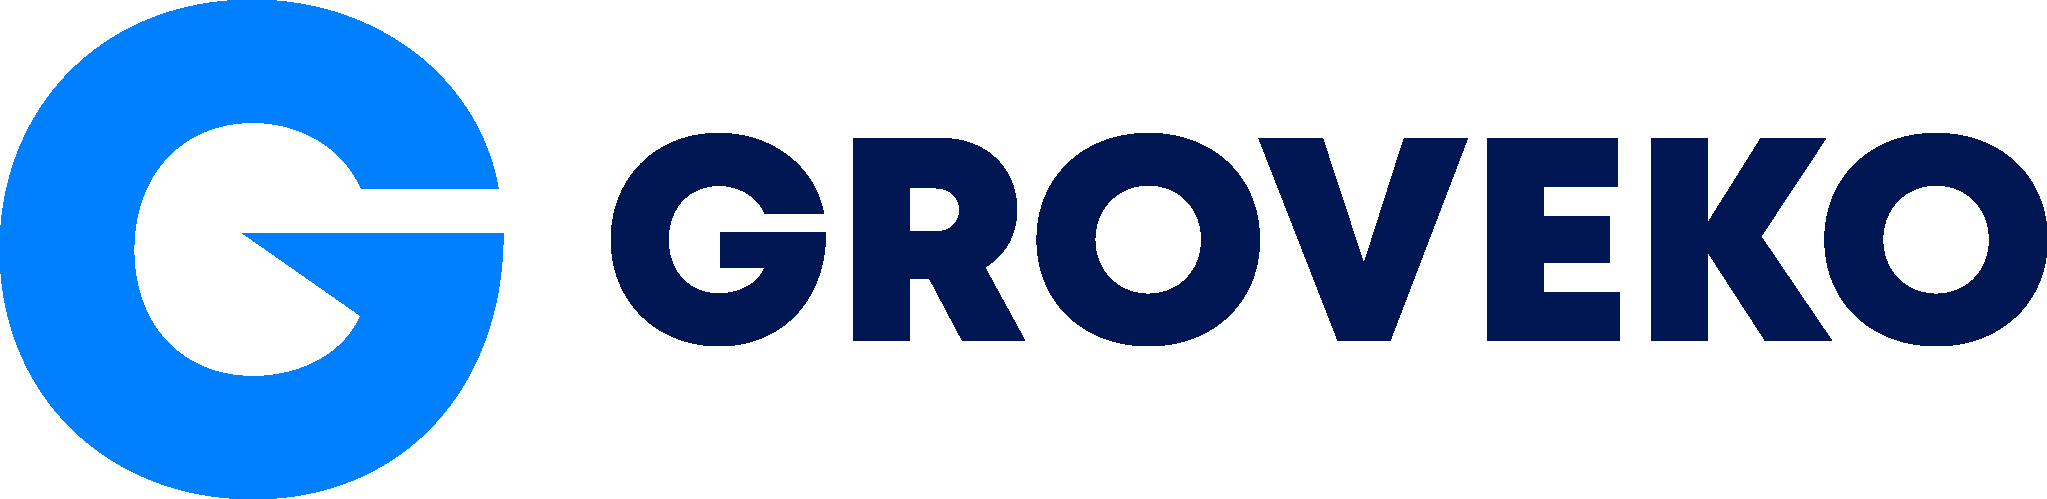 Groveko email logo